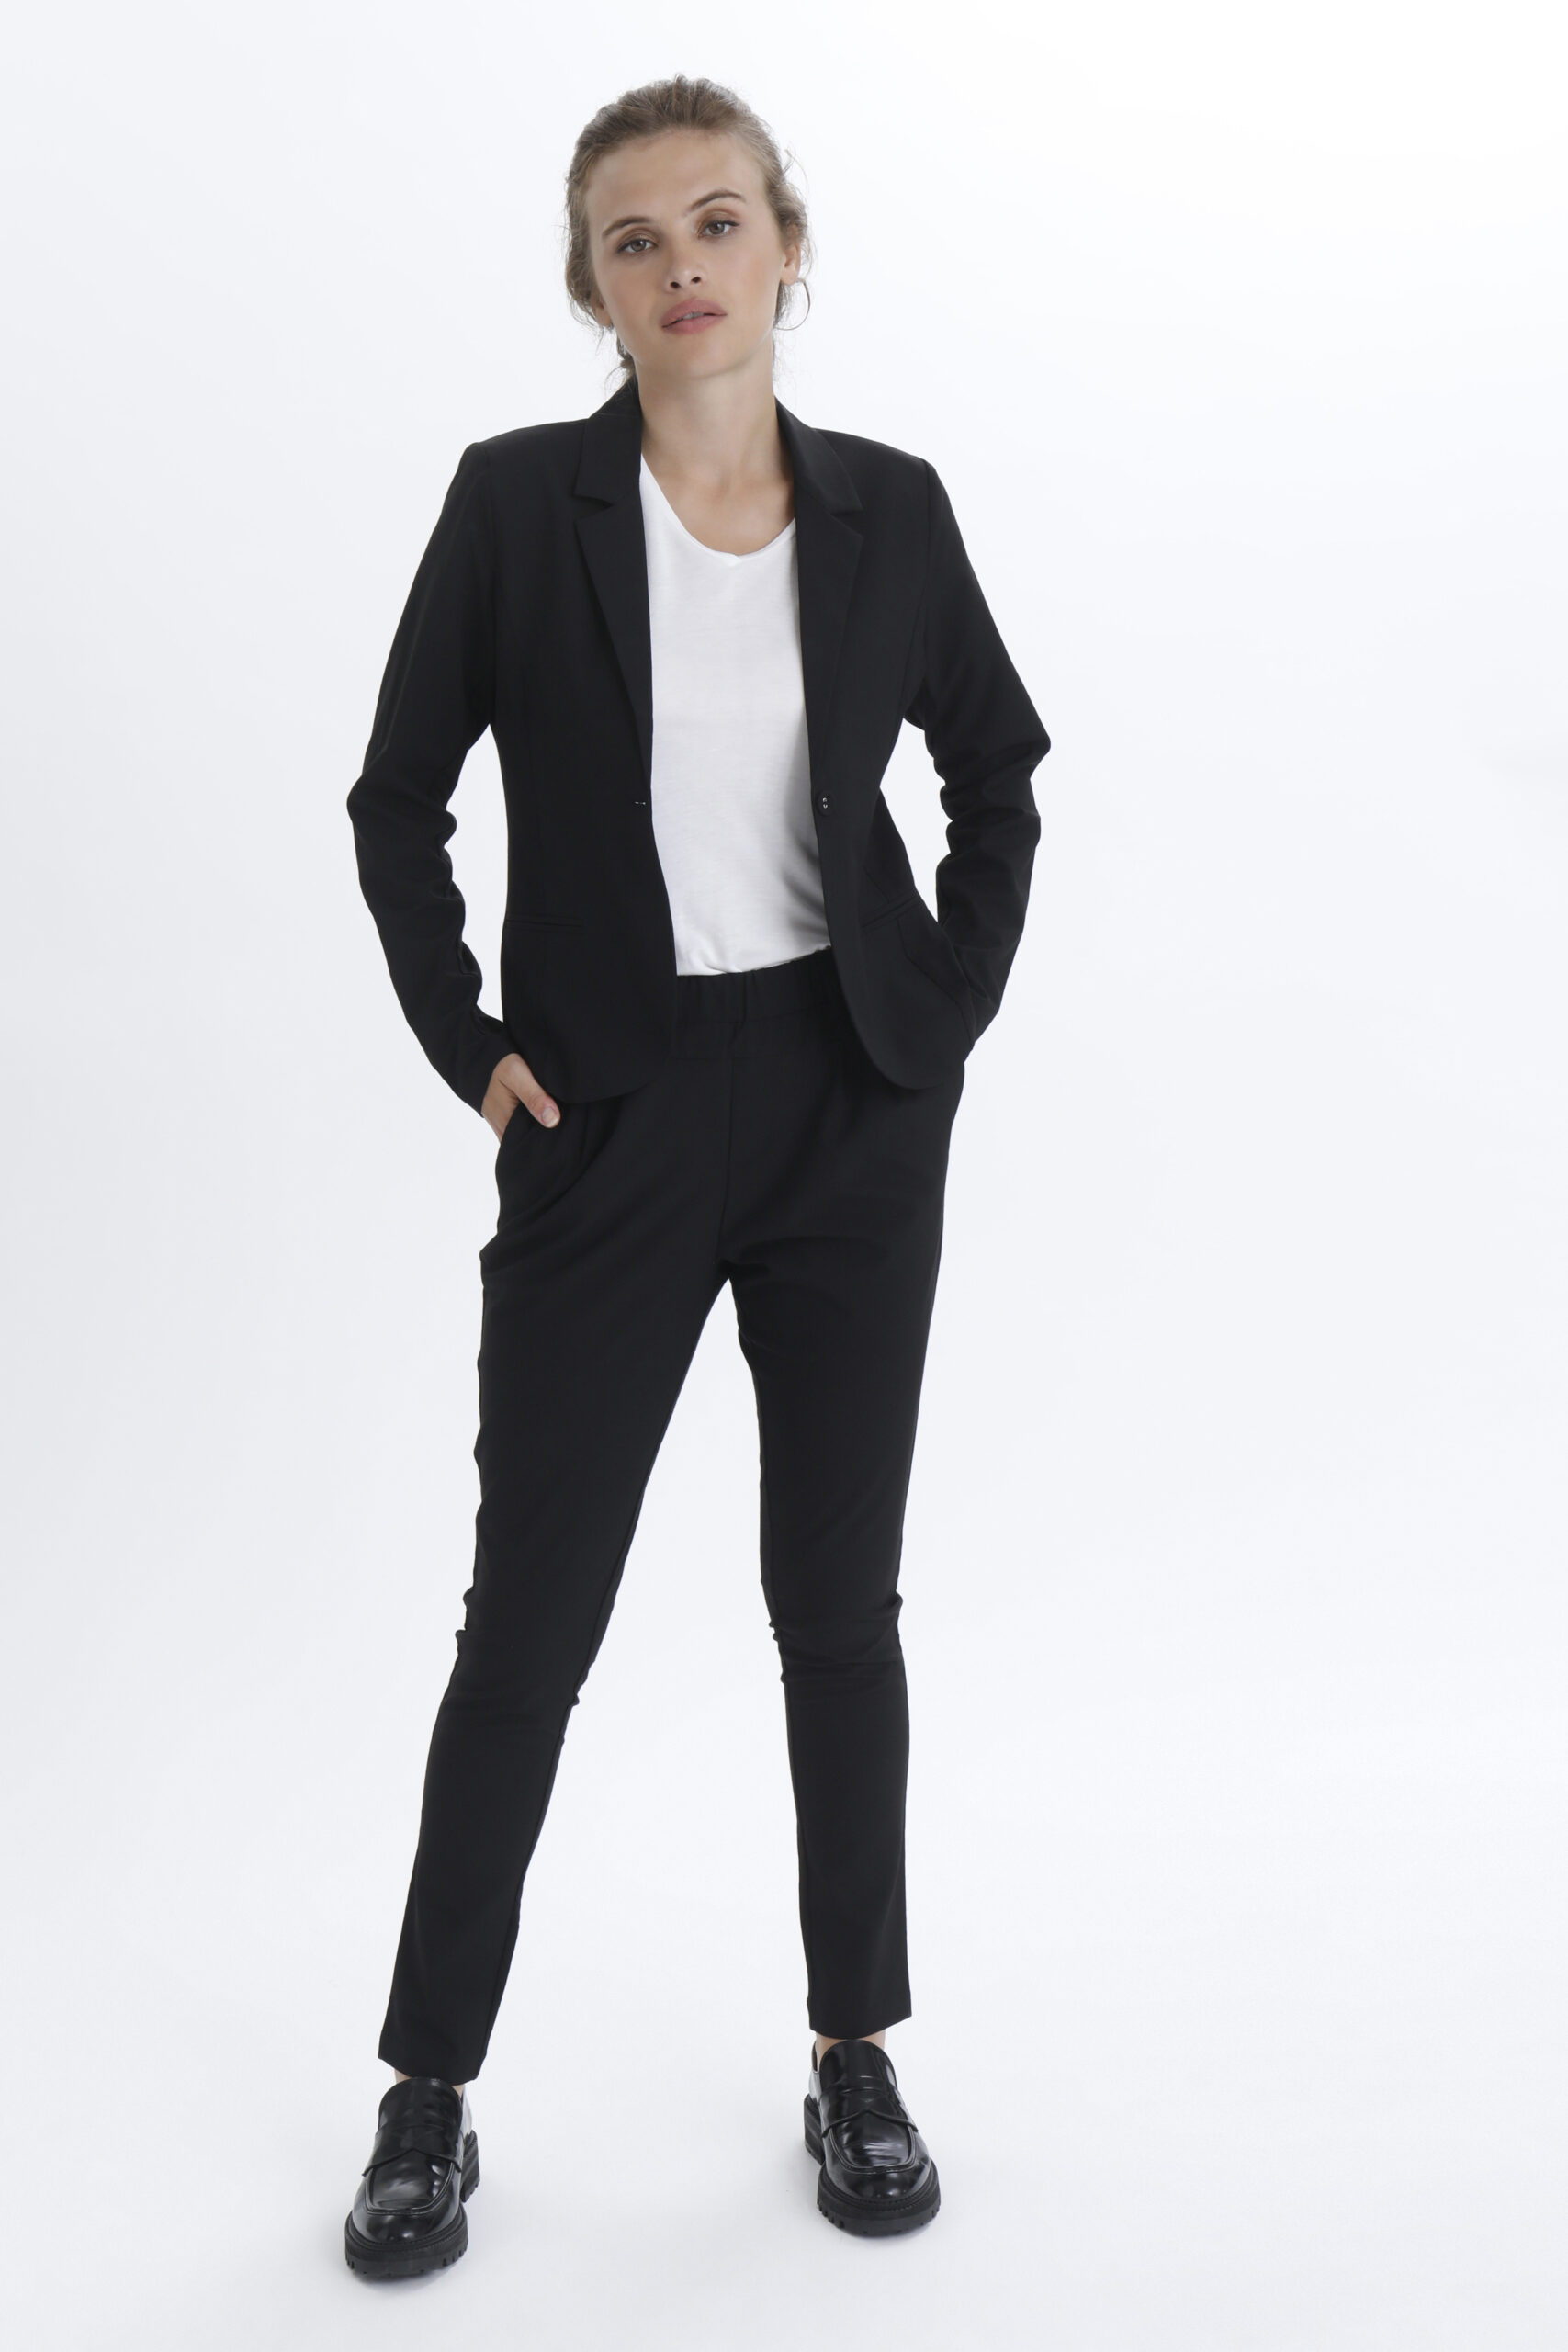 Jillian Black Pants suit